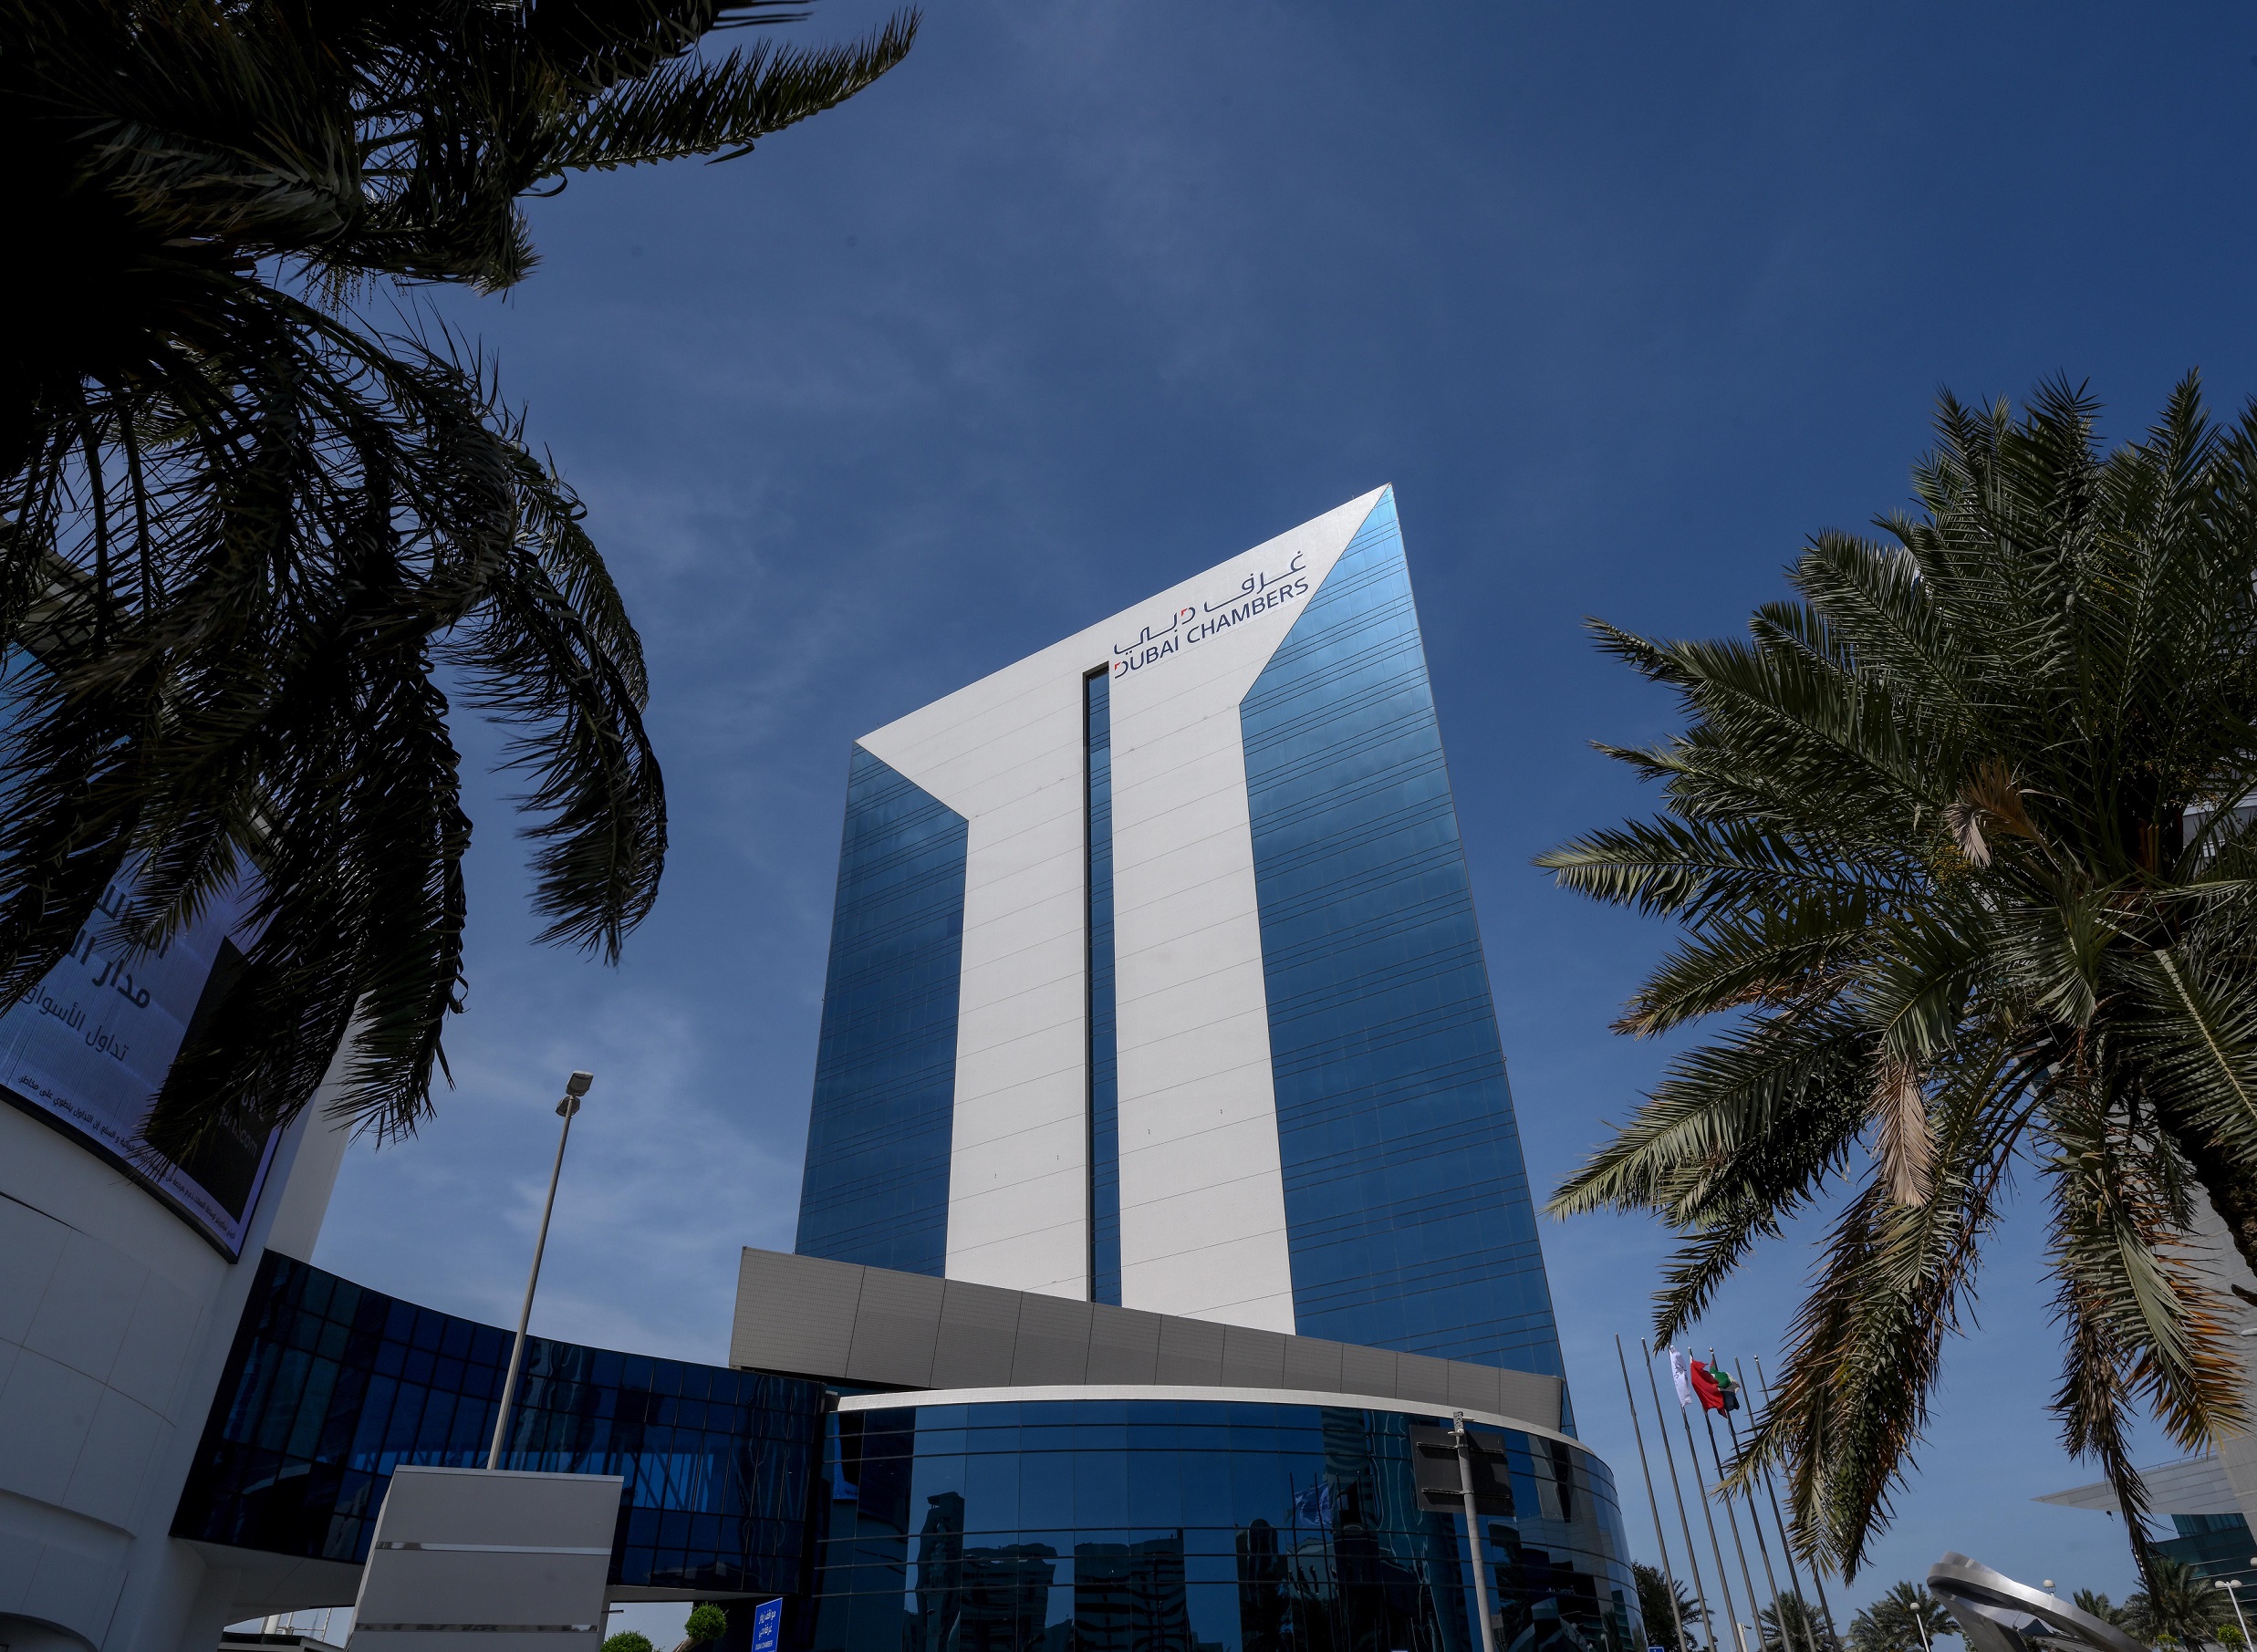 غرف دبي ضمن القائمة النهائية لنيل جائزة “أفضل مشروع غير تقليدي” في مسابقة غرف التجارة العالمية 2023